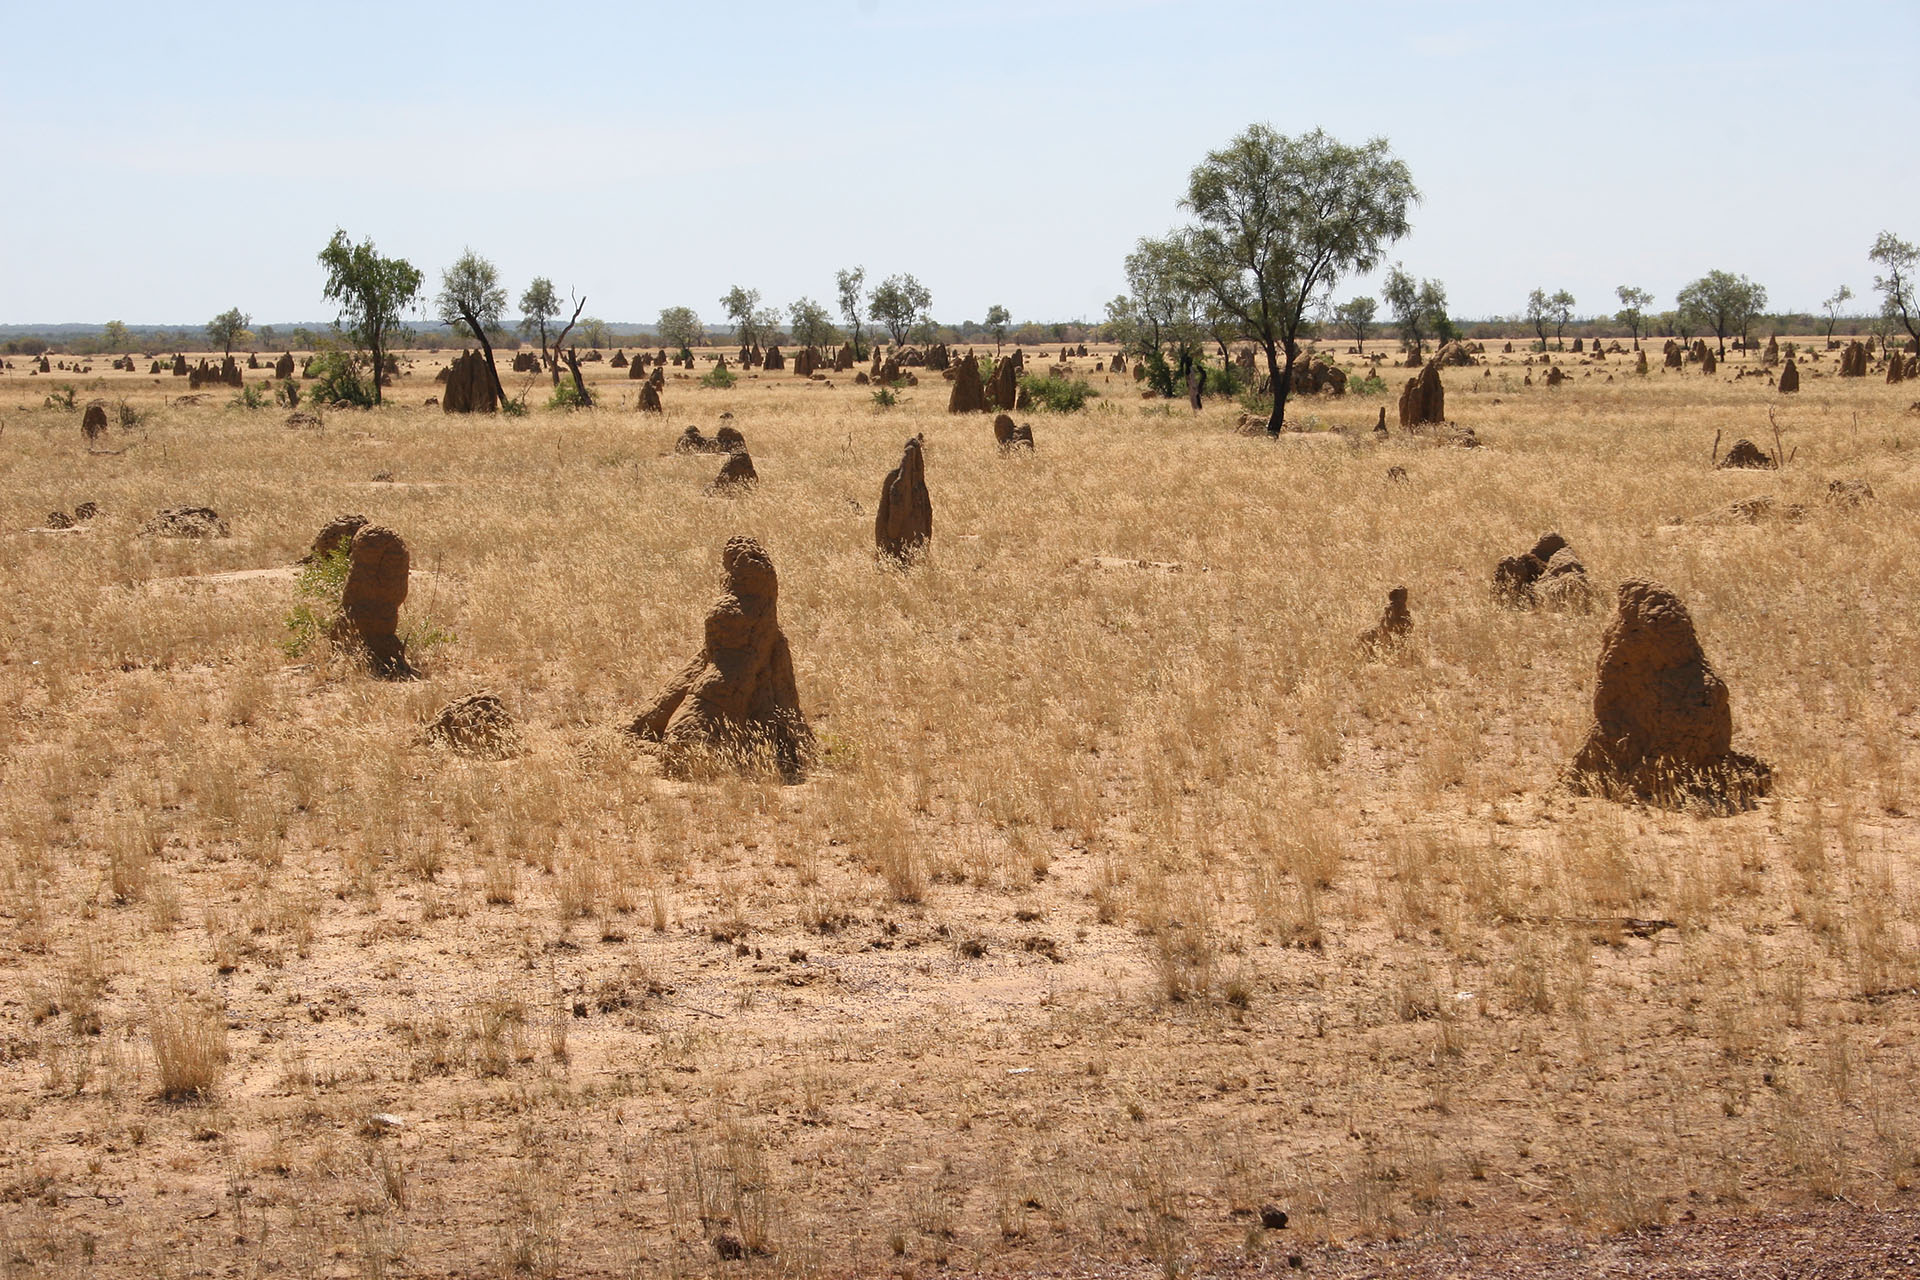 Termite mounds galore.